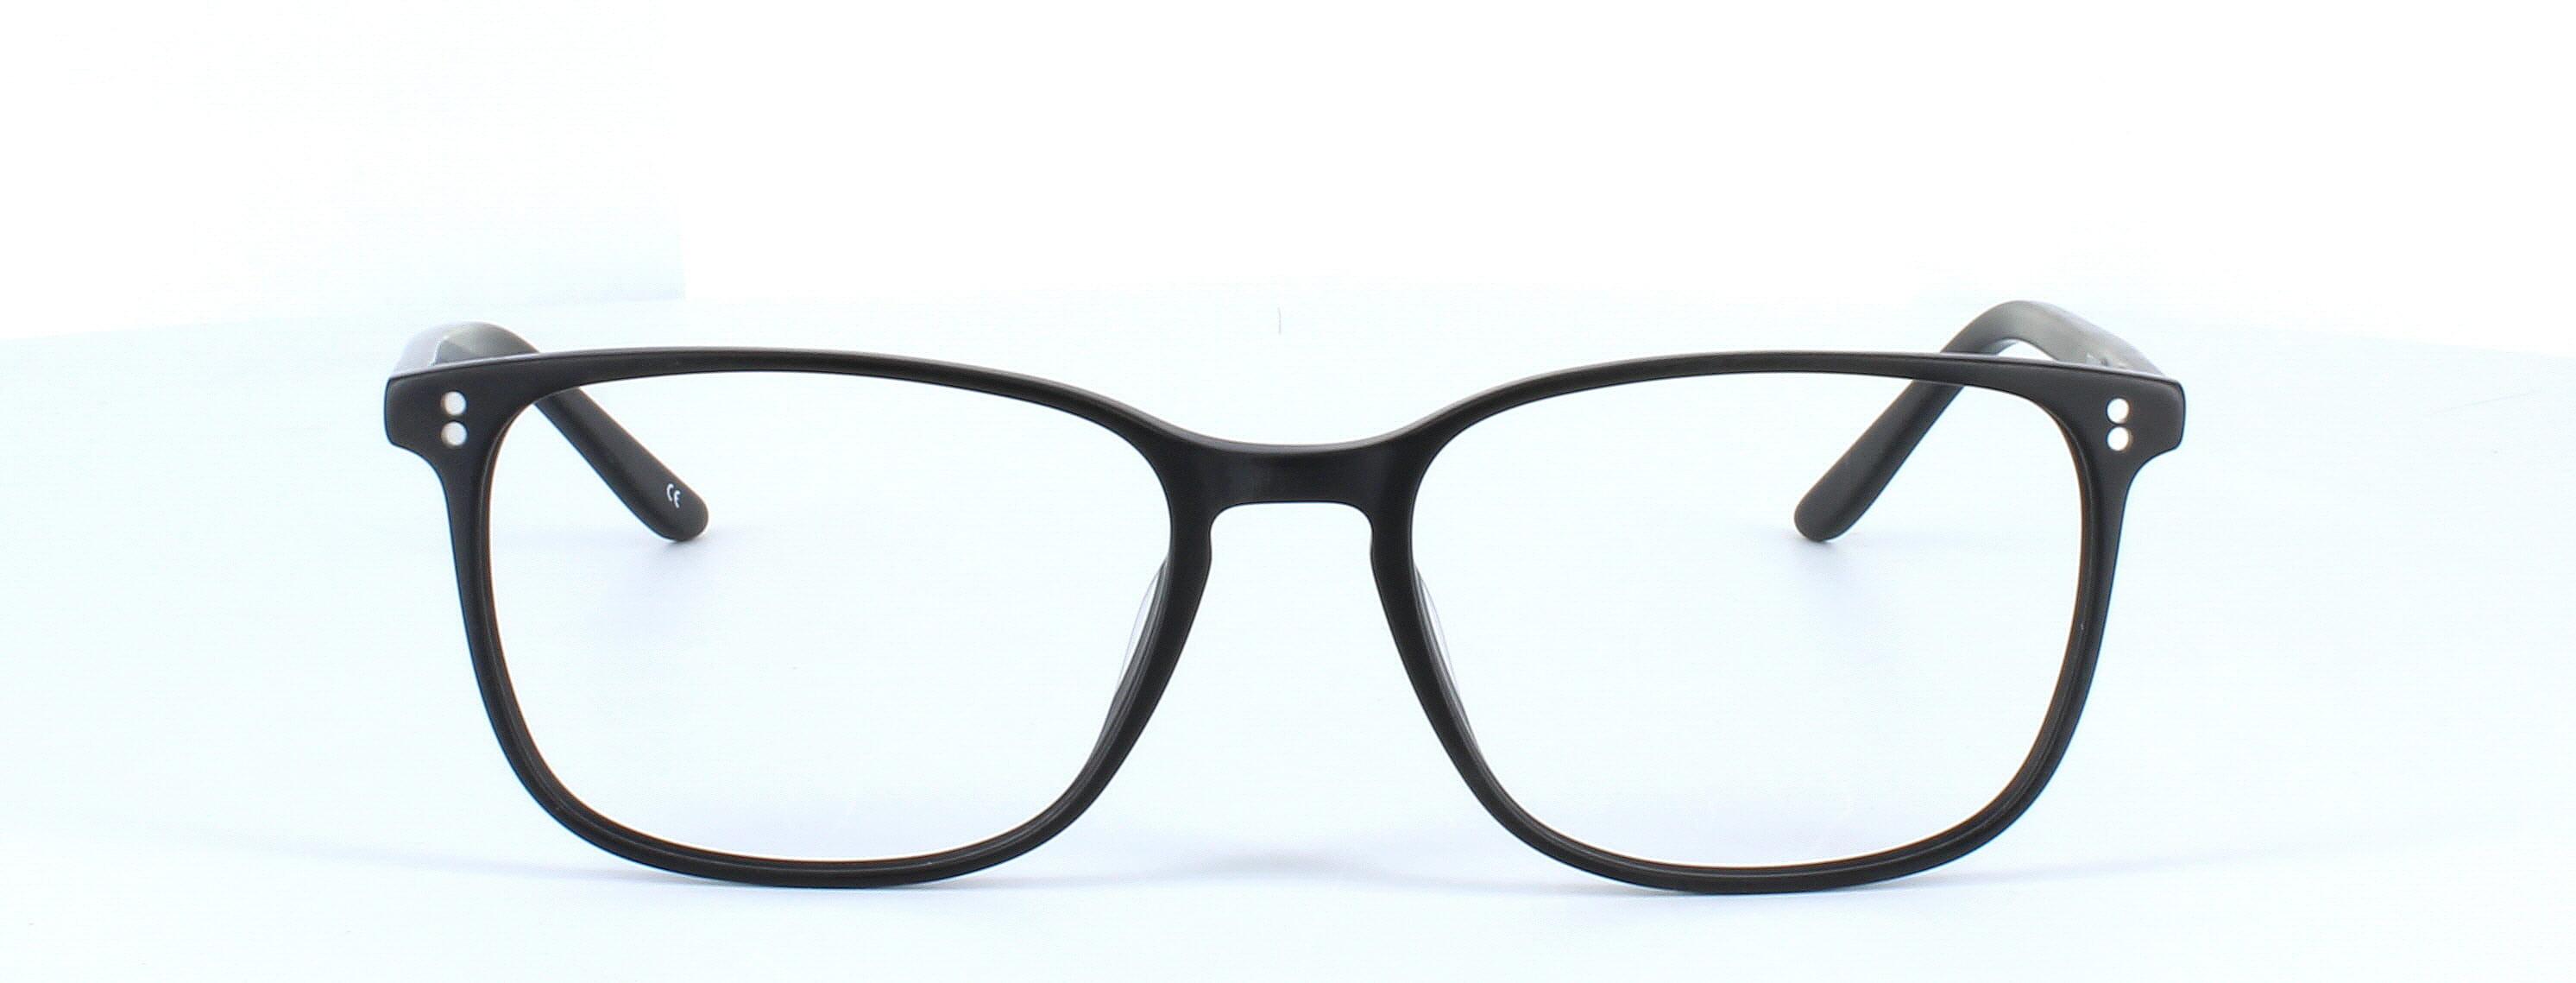 Farrington - unisex plastic glasses frame in matt black with rectangular lens shape and sprung hinge temple - image 5